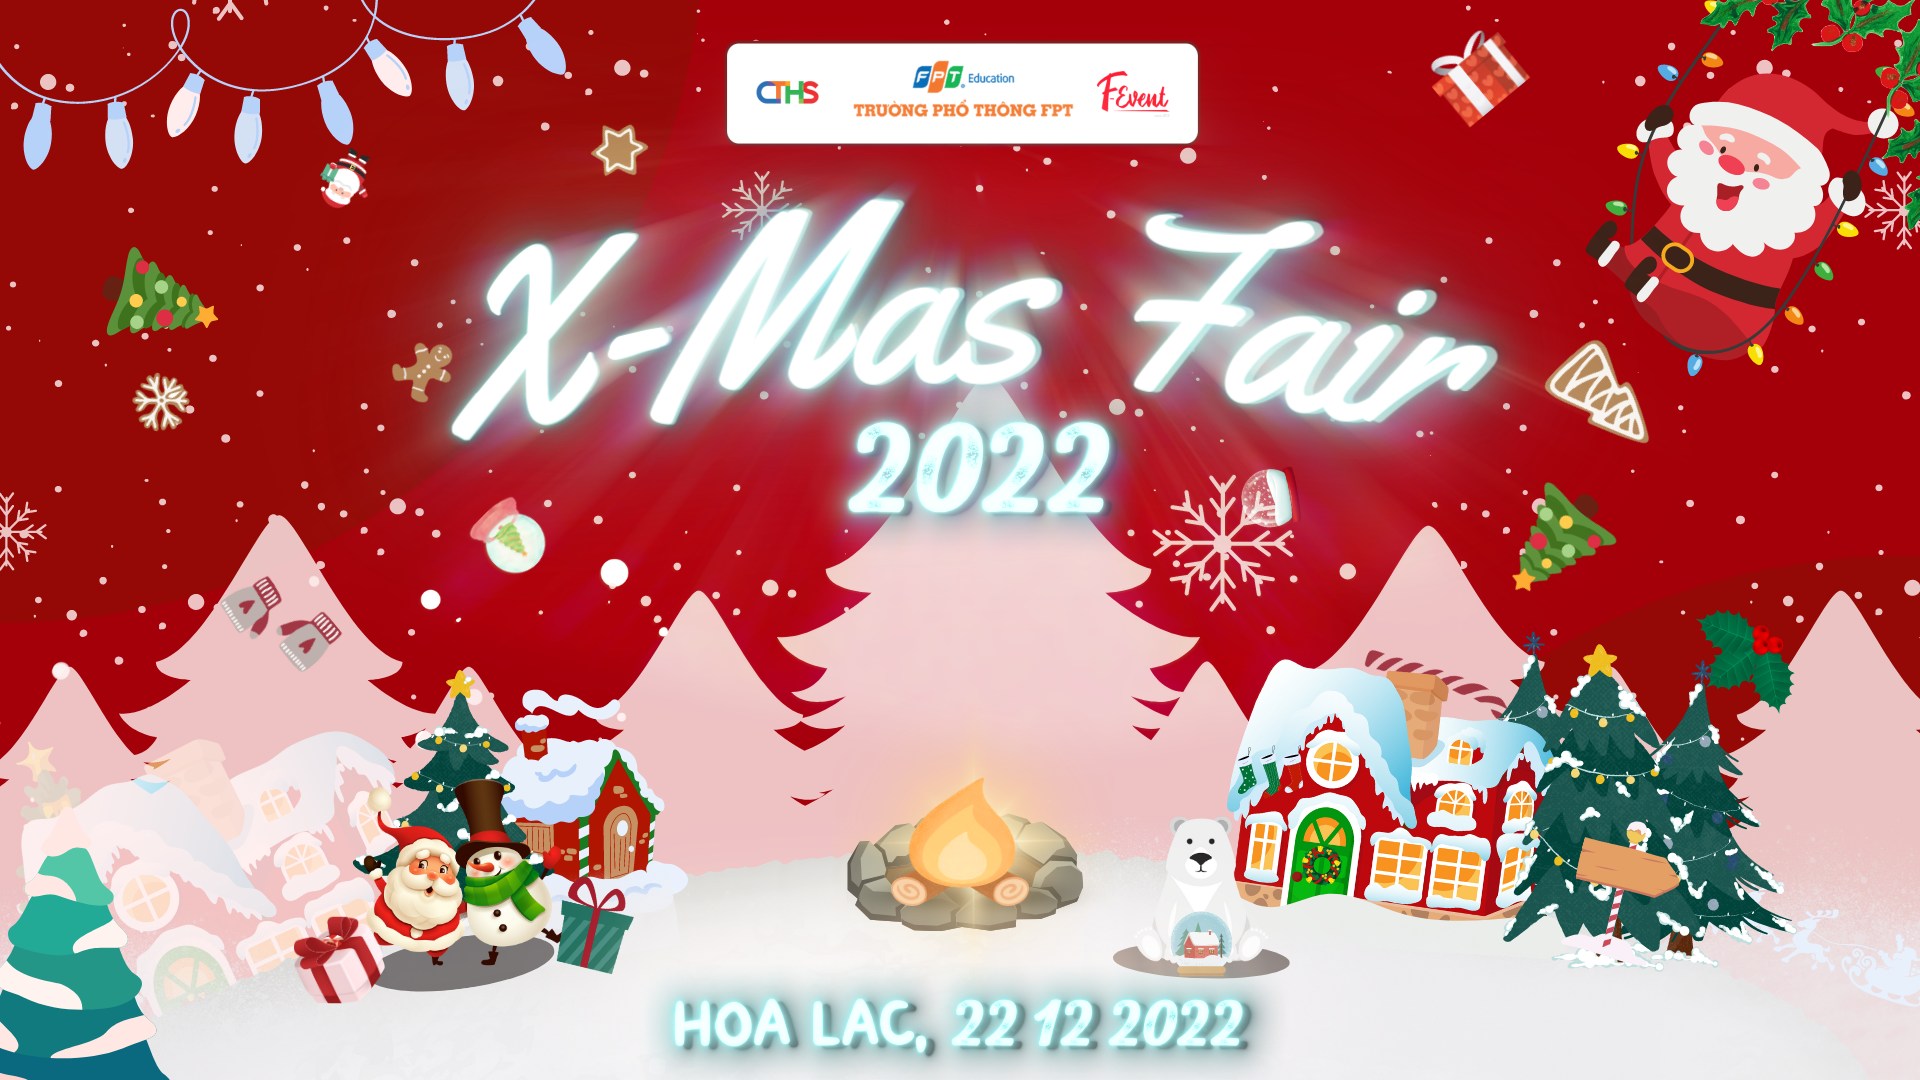 thpt-fpt-xmas-fair-2022